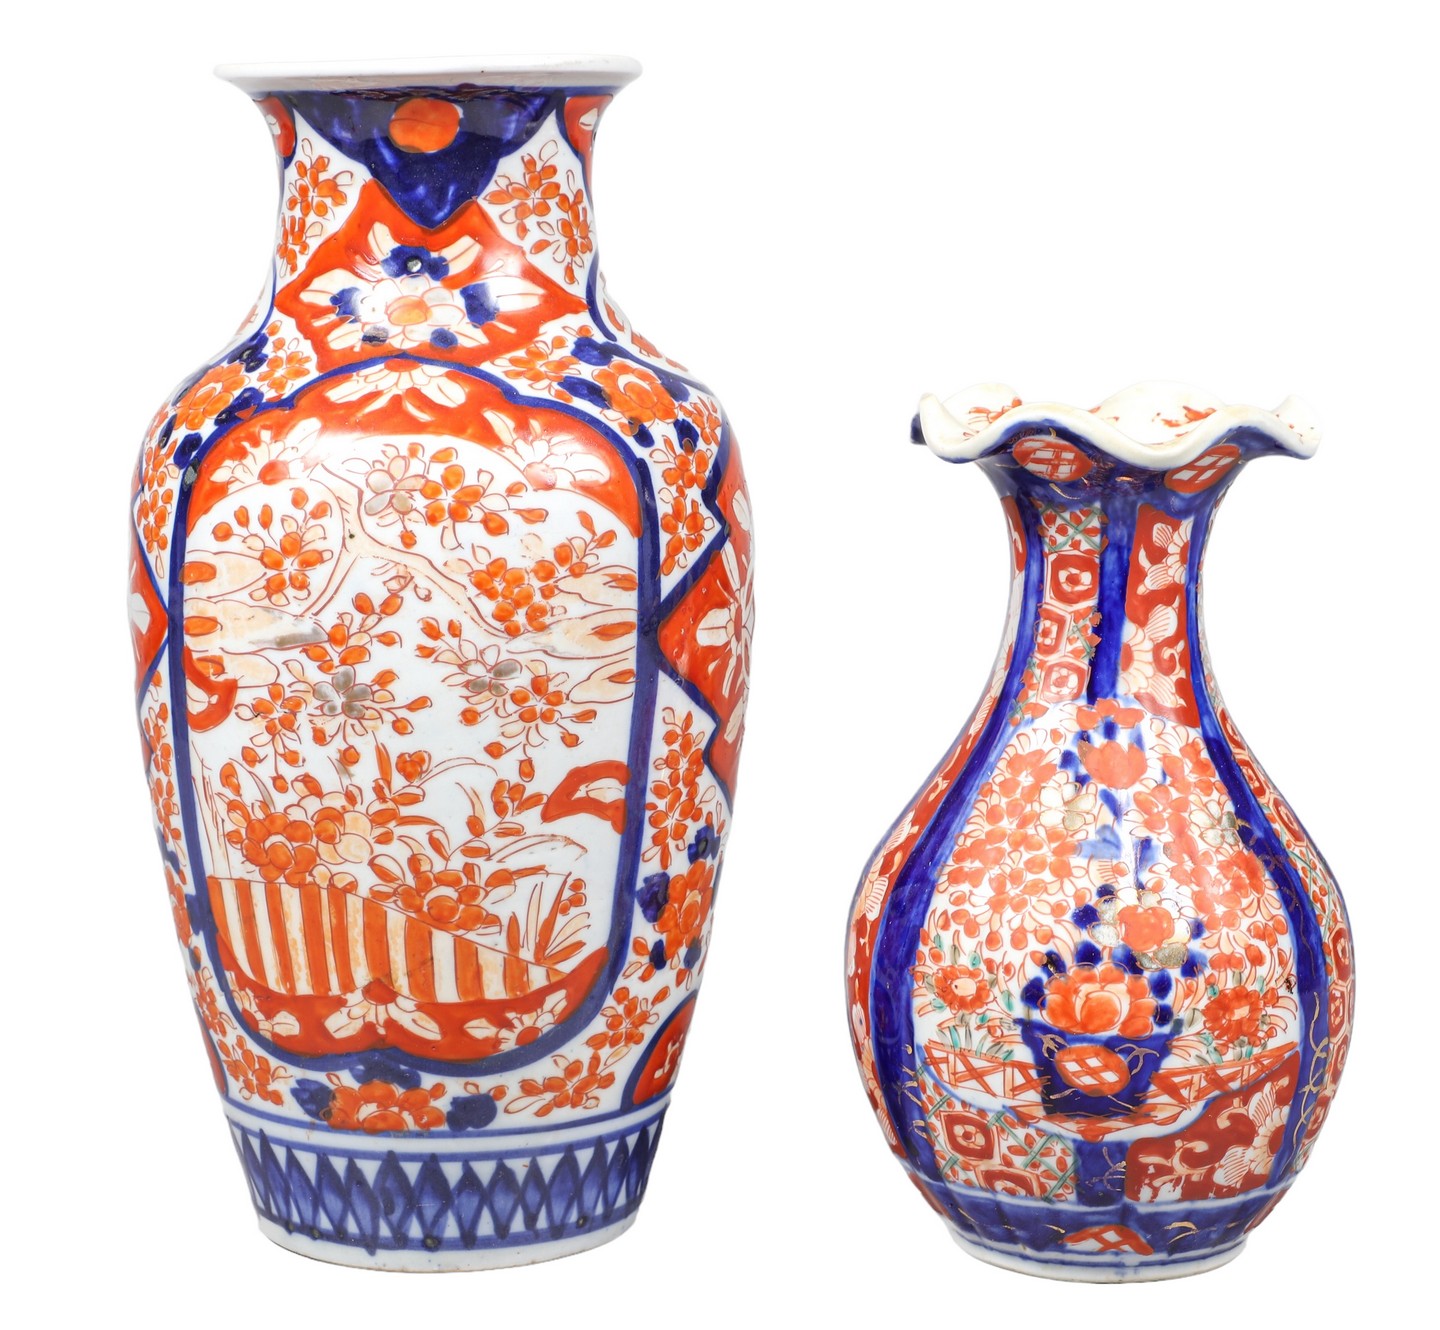  2 Japanese Imari porcelain vases  2e0abb